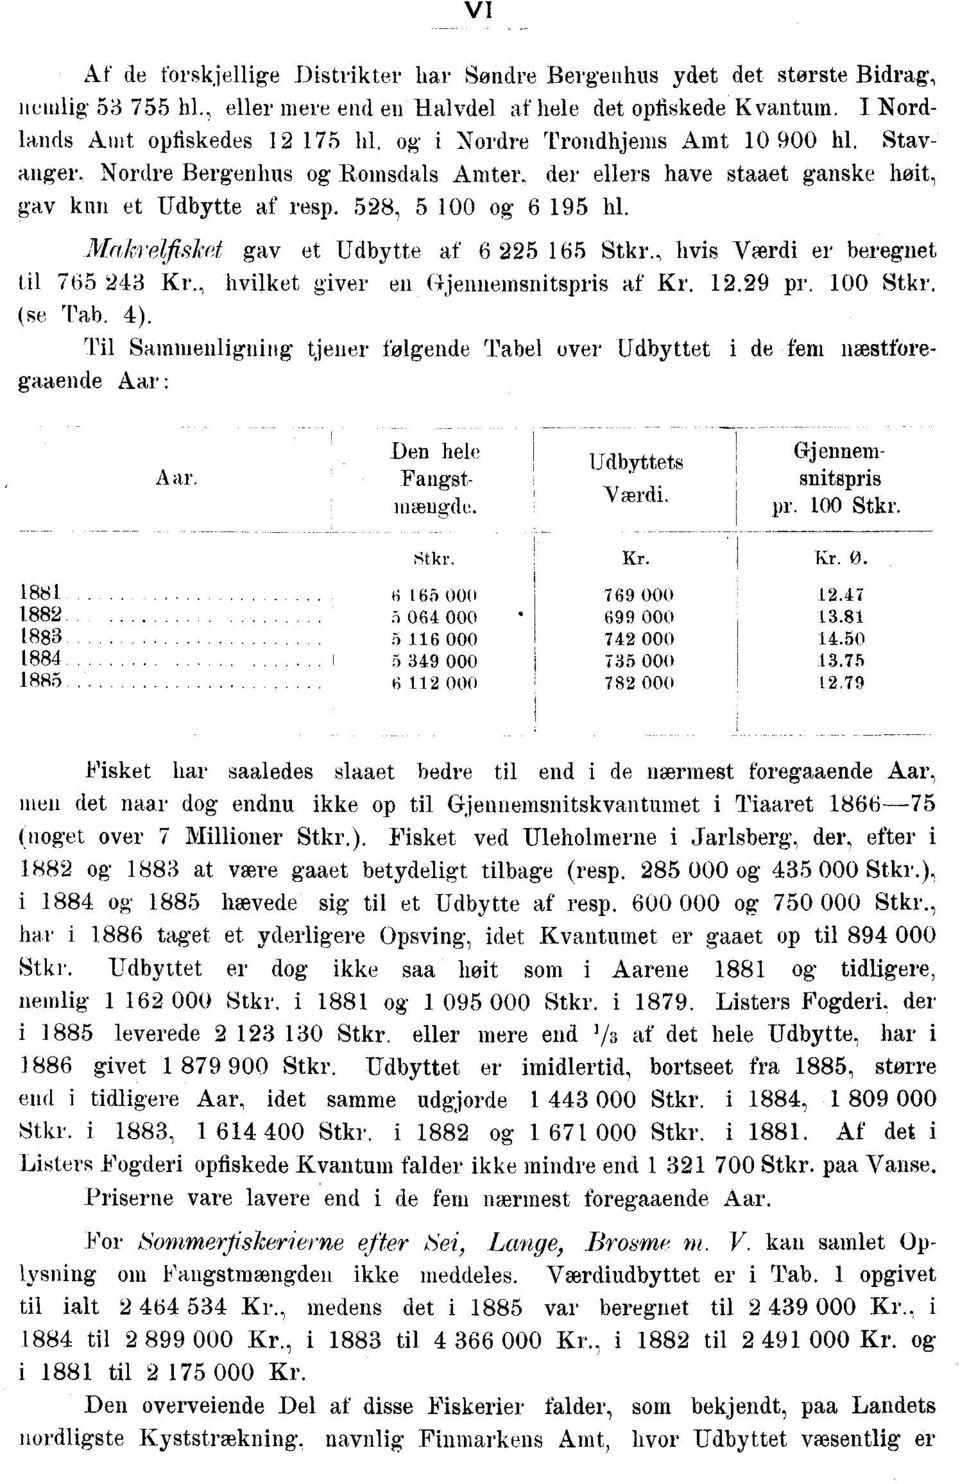 Makrqfisket gav et Udbytte af 6 225 165 Stkr., hvis Værdi er beregnet til 765 '243 Kr., hvilket giver en Gjennemsnitspris af Kr. 12.29 pr. 100 Stkr. (se Tab. 4).